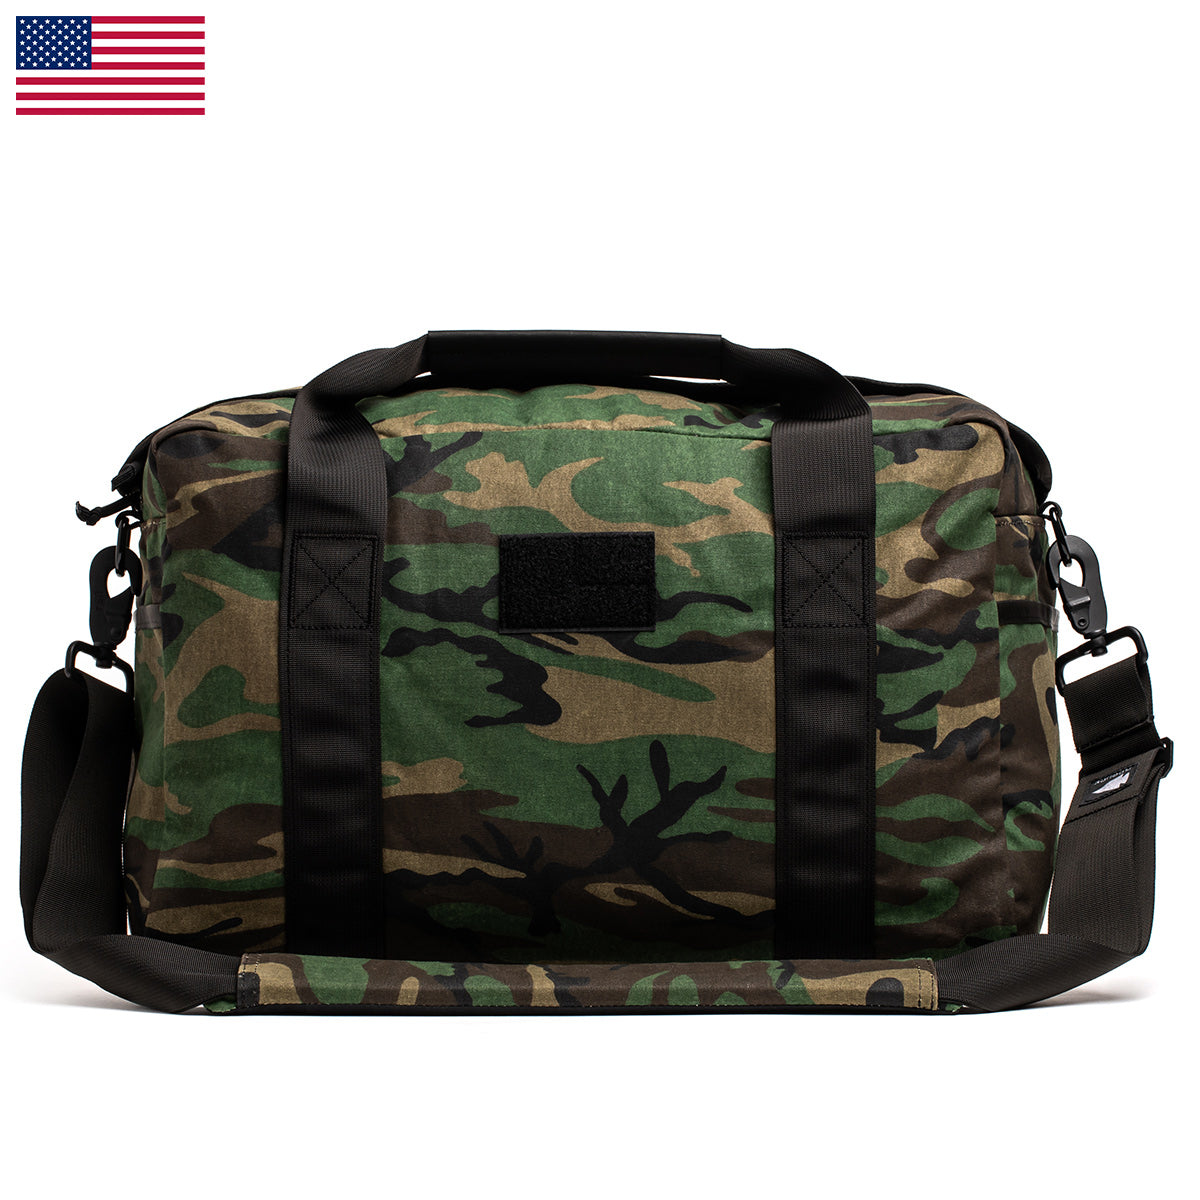 Kit Bag Heritage - USA  (Includes Shoulder Strap)